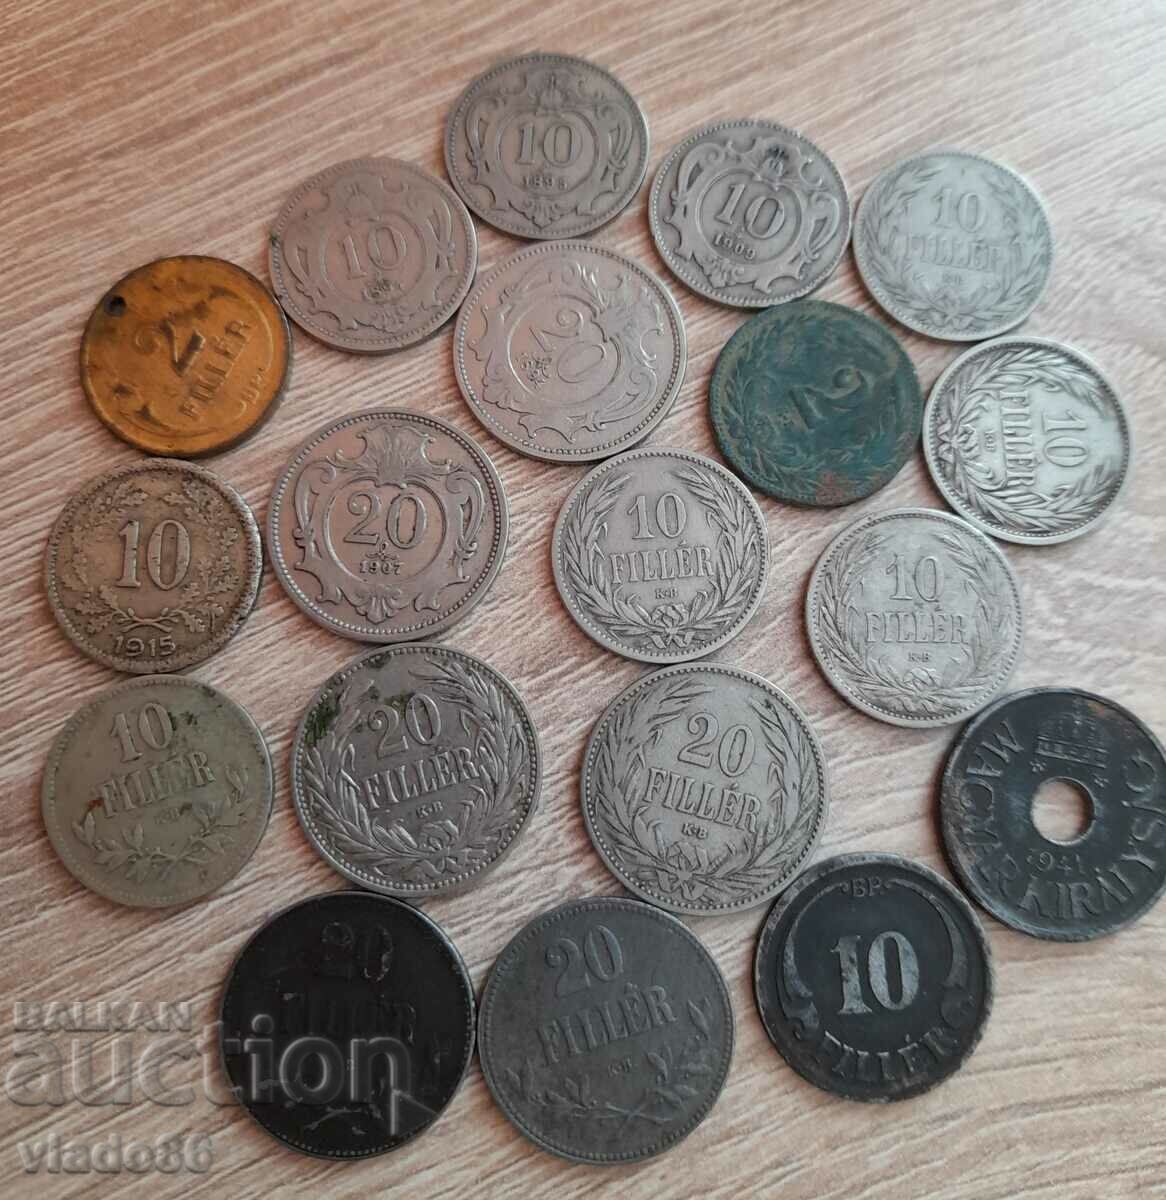 Lot de monede vechi austriece și maghiare nerecurente